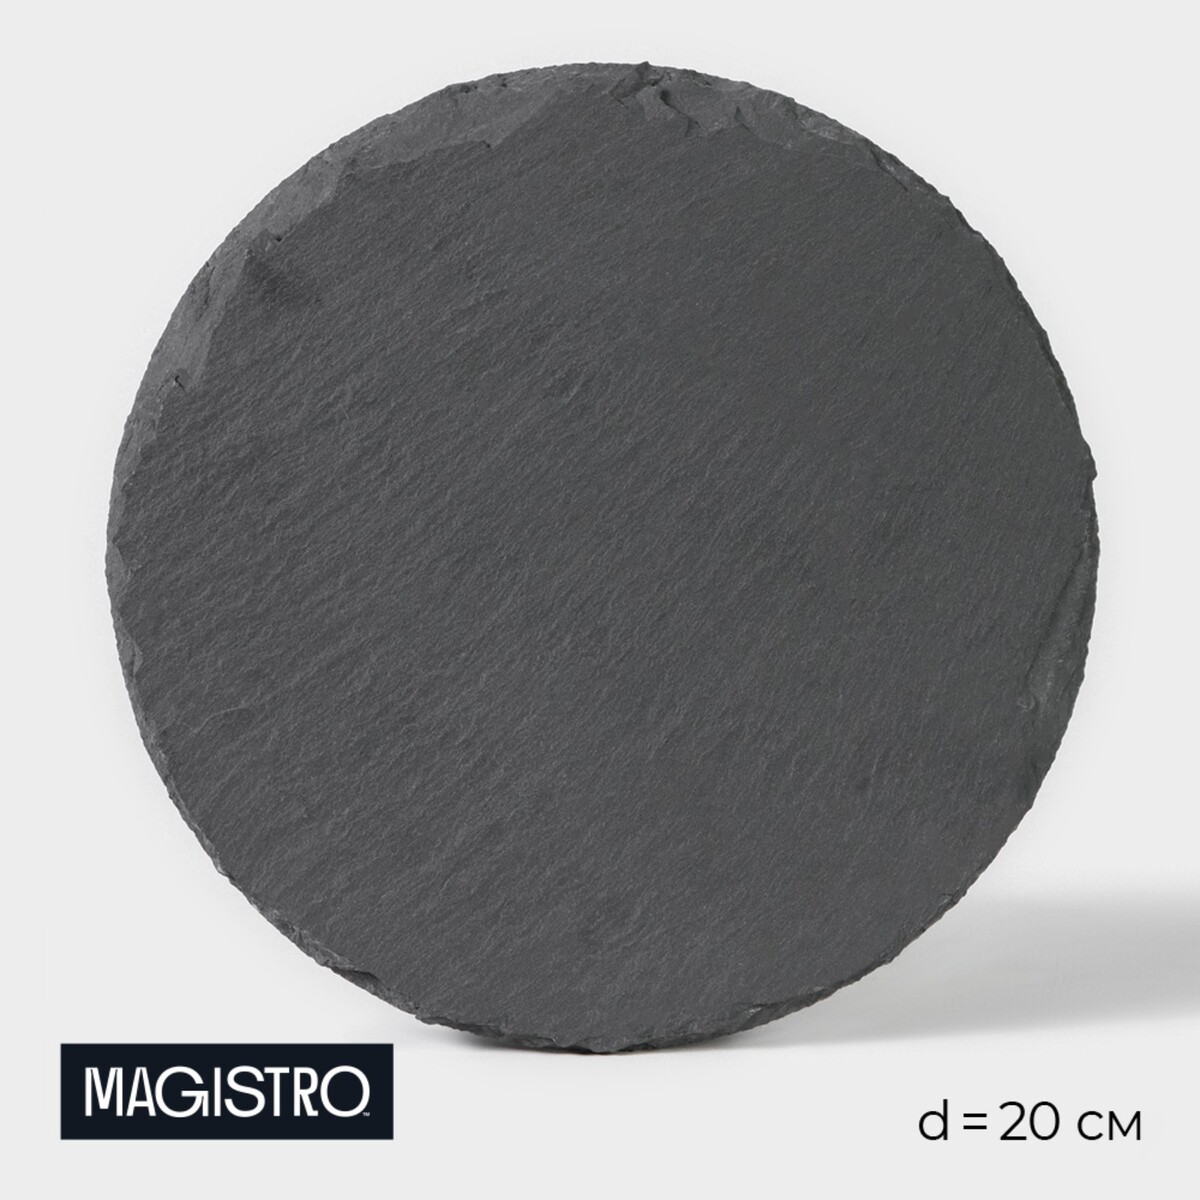 Доска для подачи из сланца magistro valley, d=20 см доска для подачи из сланца magistro valley 20×40 см